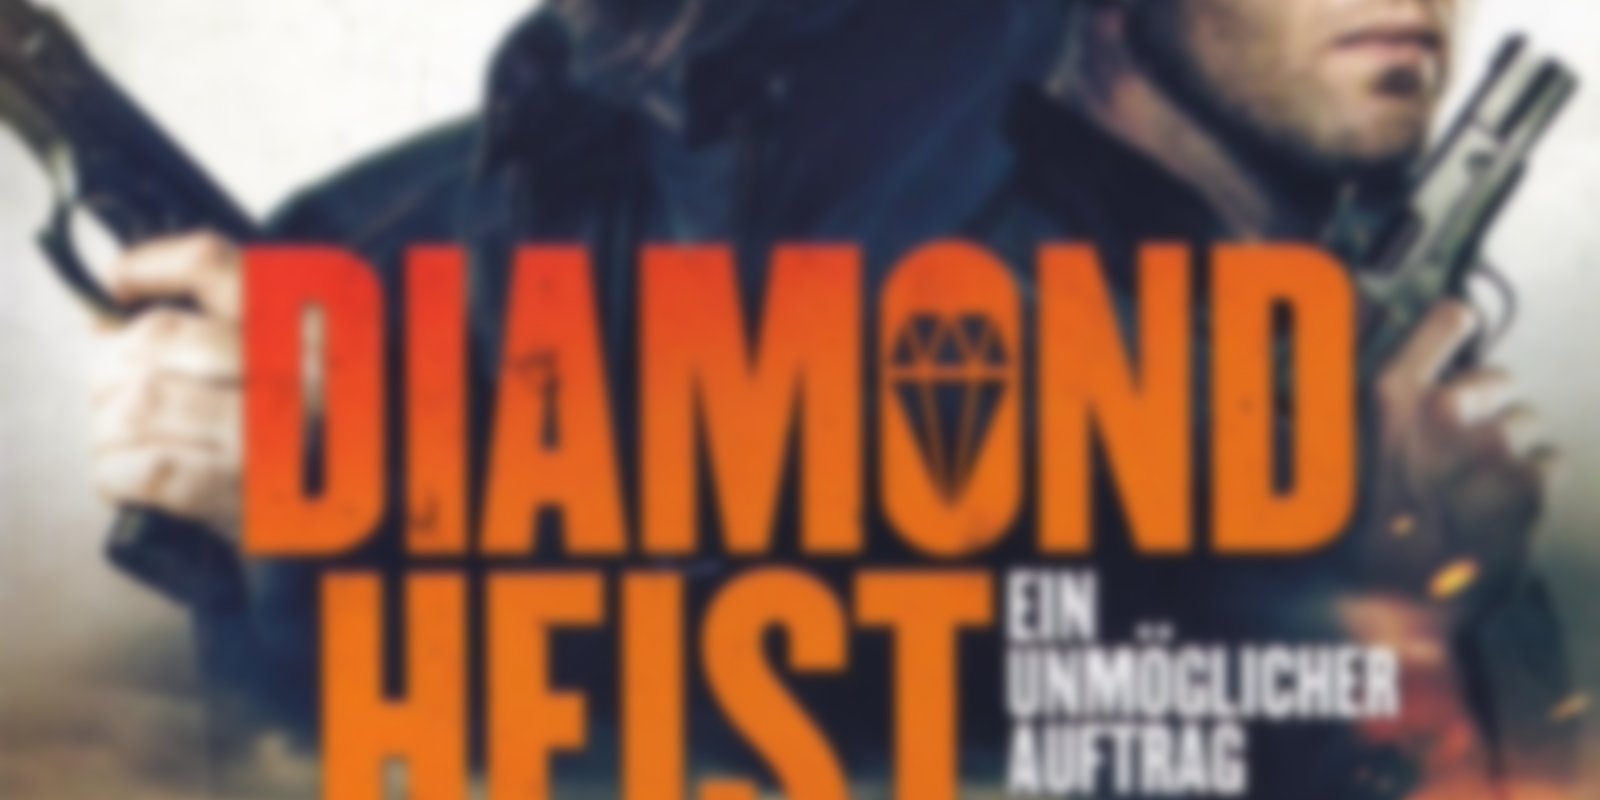 Diamond Heist - Ein unmöglicher Auftrag